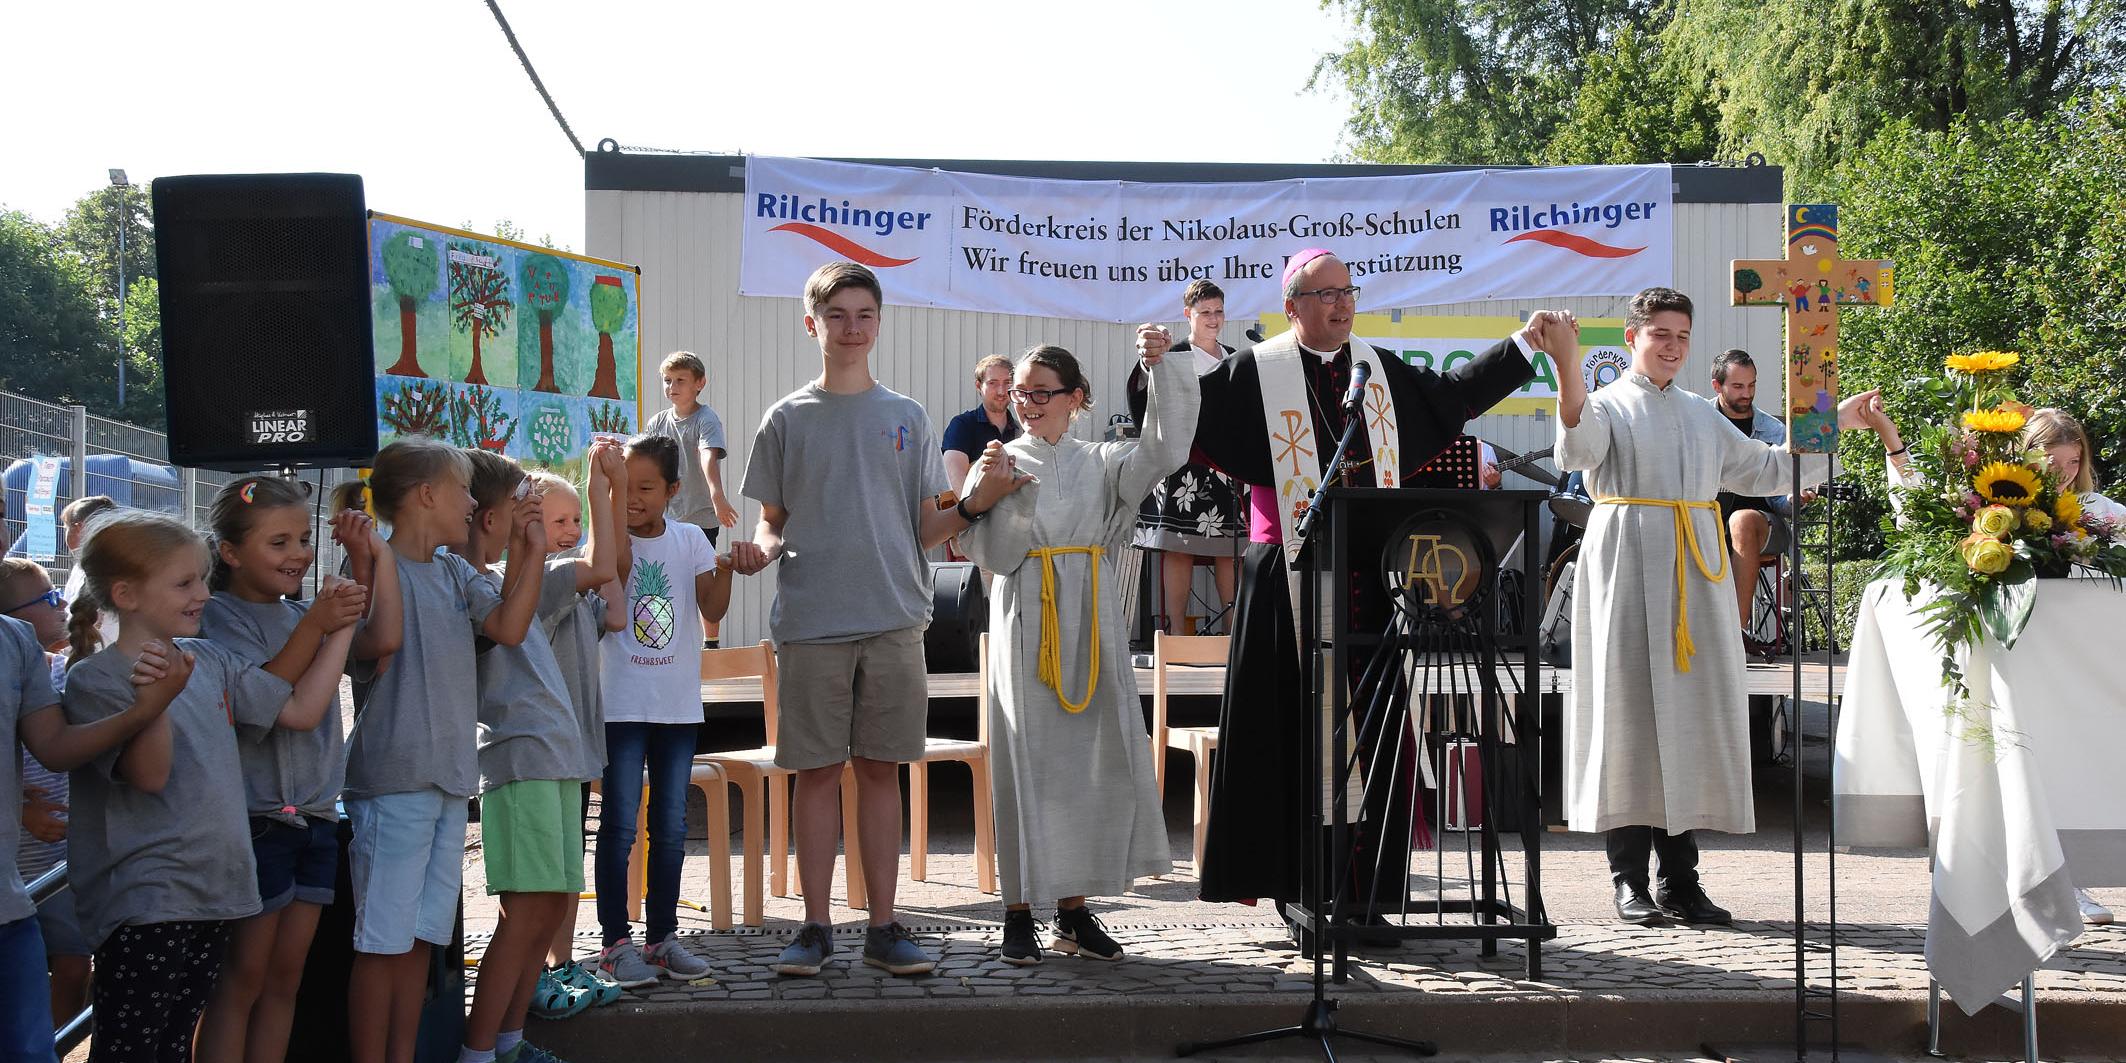 Zum Schulfest zum 40jährigen Bestehen der Nikolaus-Groß-Schulen feiert Bischof Ackermann einen Wortgottesdienst